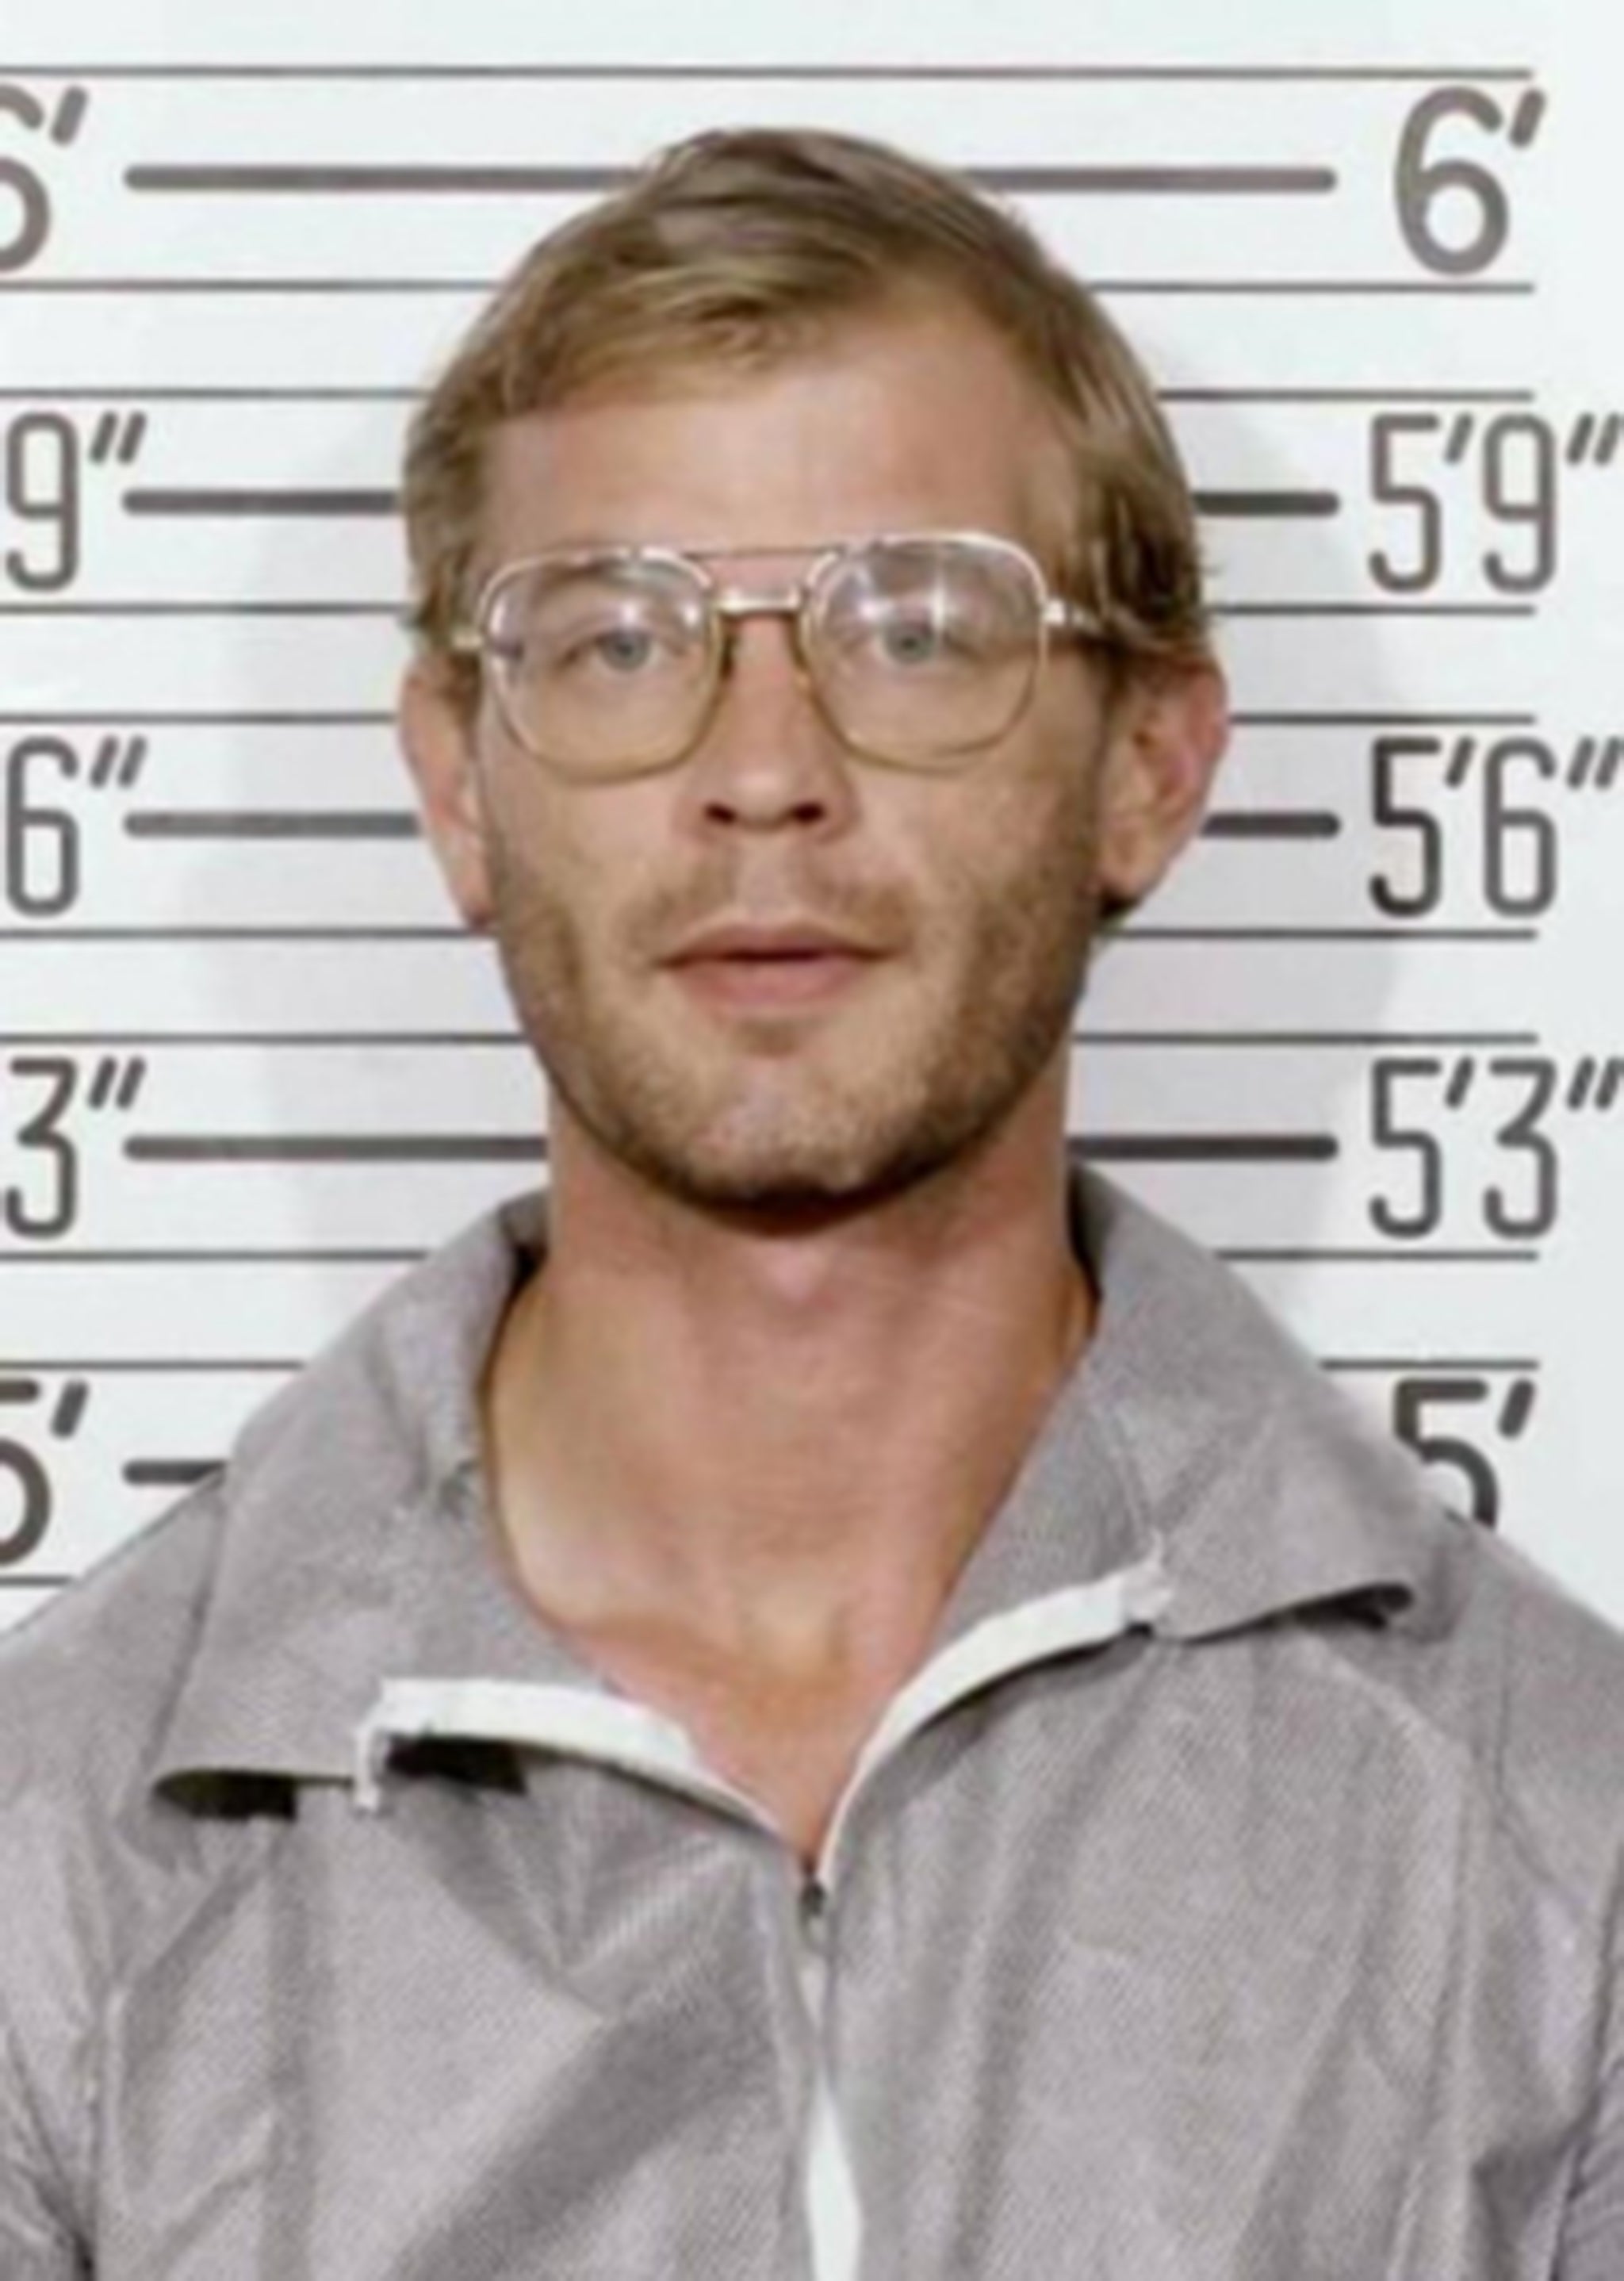 Jeffrey Dahmer fue sentenciado por asesinar a 17 hombres y niños entre 1978 y 1991